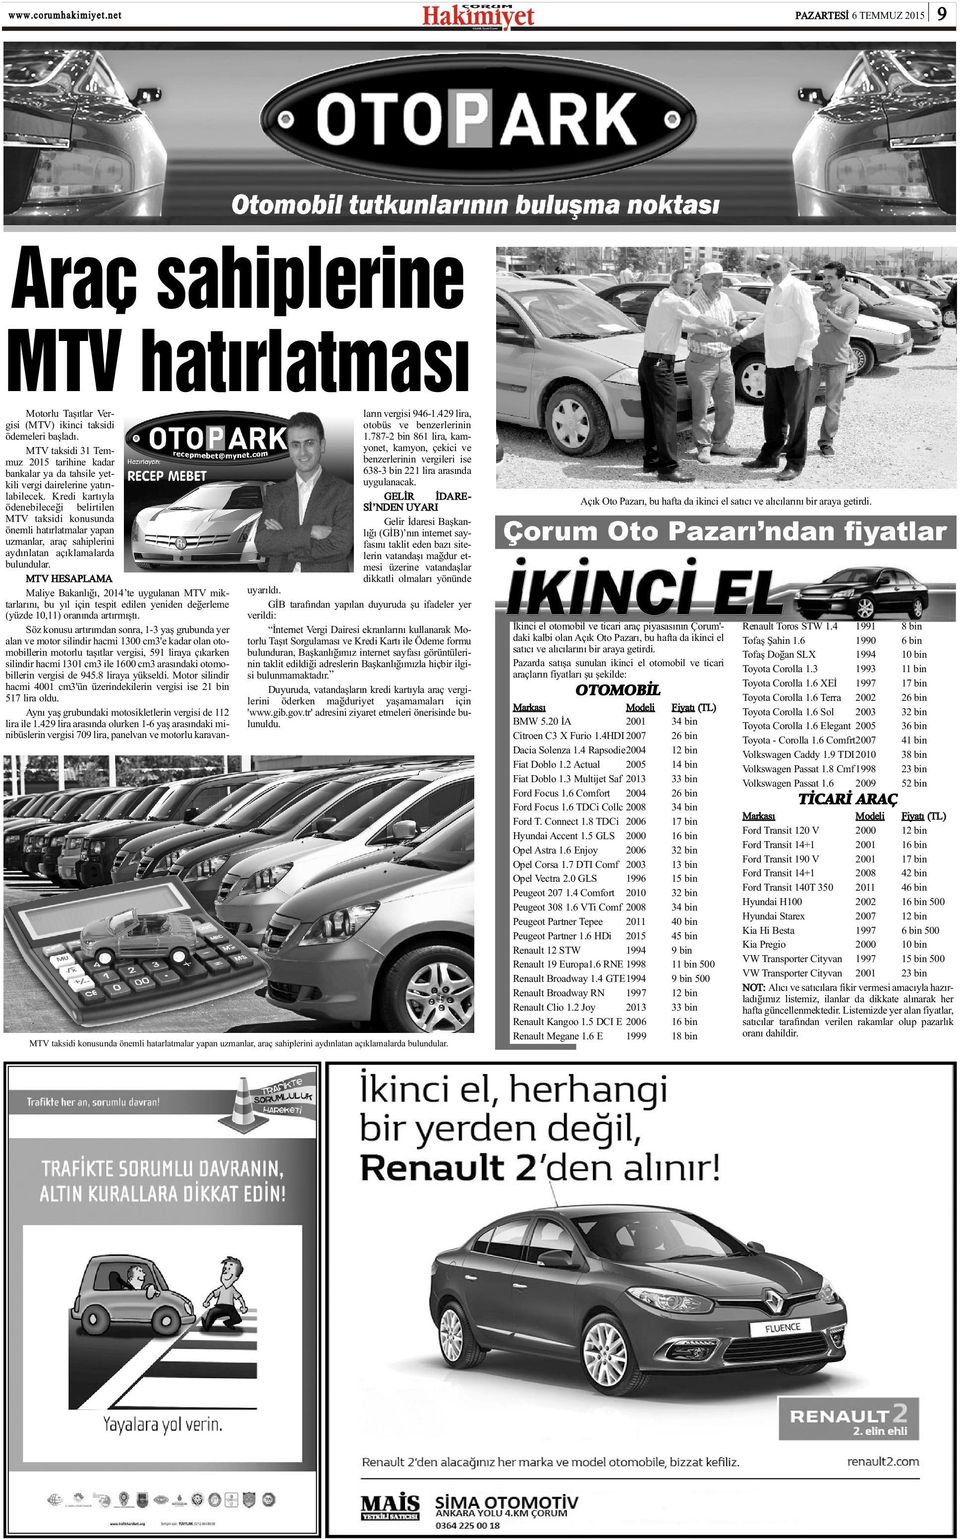 Kredi kartýyla ödenebileceði belirtilen MTV taksidi konusunda önemli hatýrlatmalar yapan uzmanlar, araç sahiplerini aydýnlatan açýklamalarda bulundular.